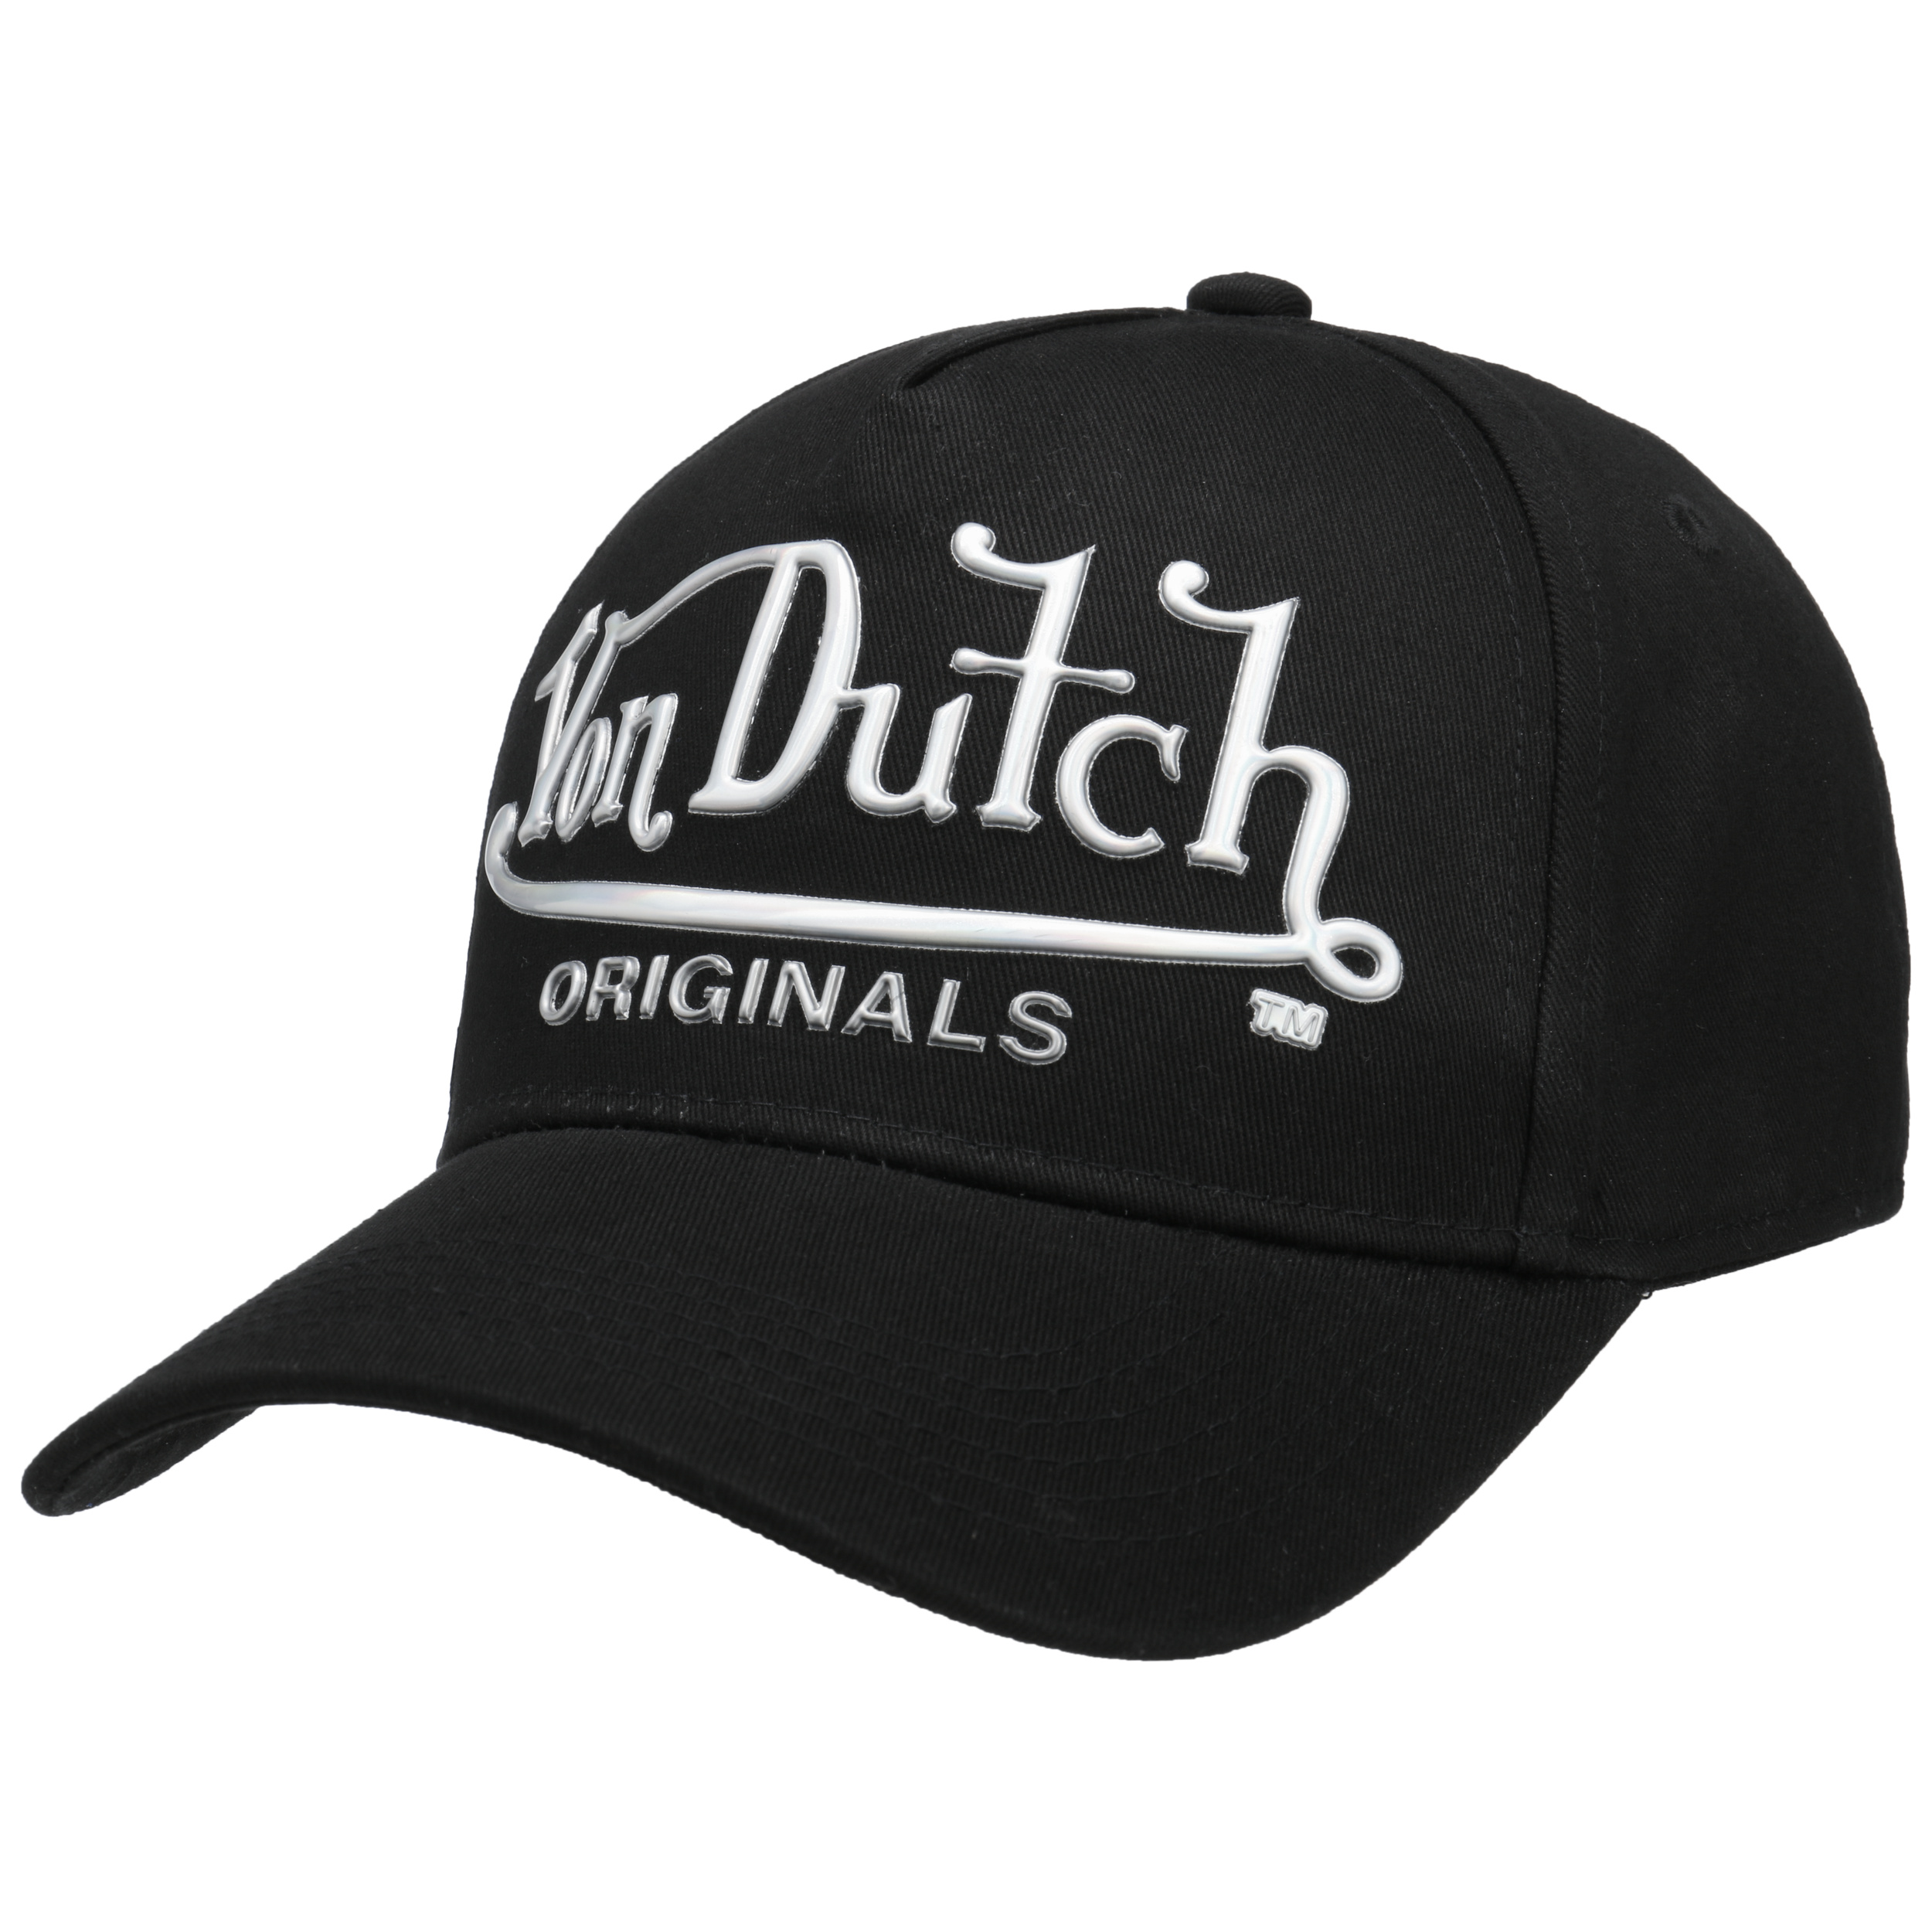 Big Logo Cap by Von Dutch